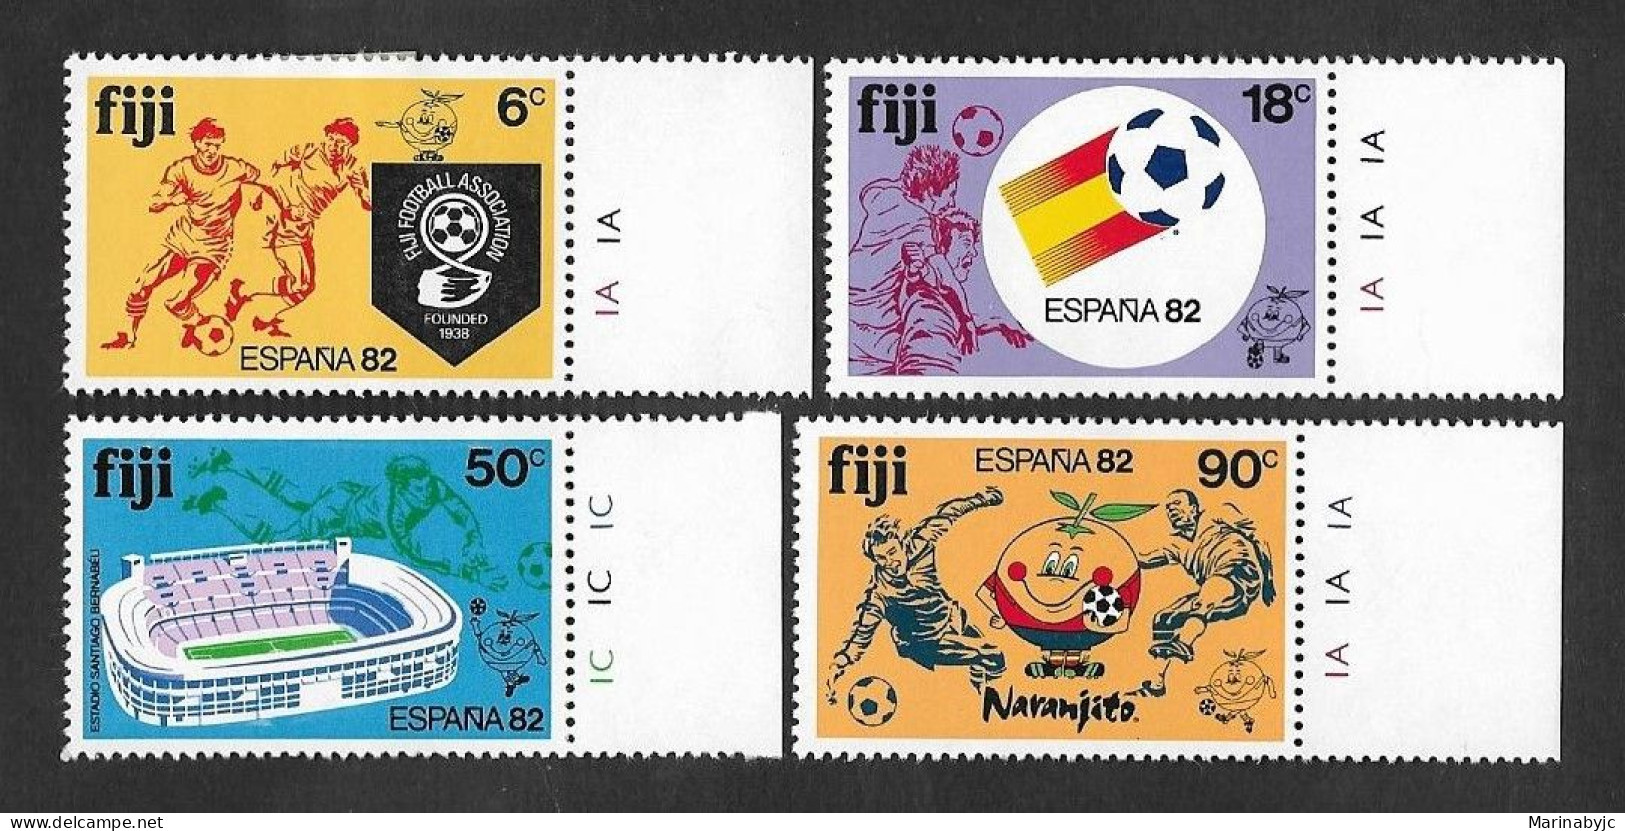 SD)1982 FIJI SERIES SPORTS, FOOTBALL, WORLD CHAMPIONSHIP SPAIN 82', 4 MINT STAMPS - Fiji (1970-...)